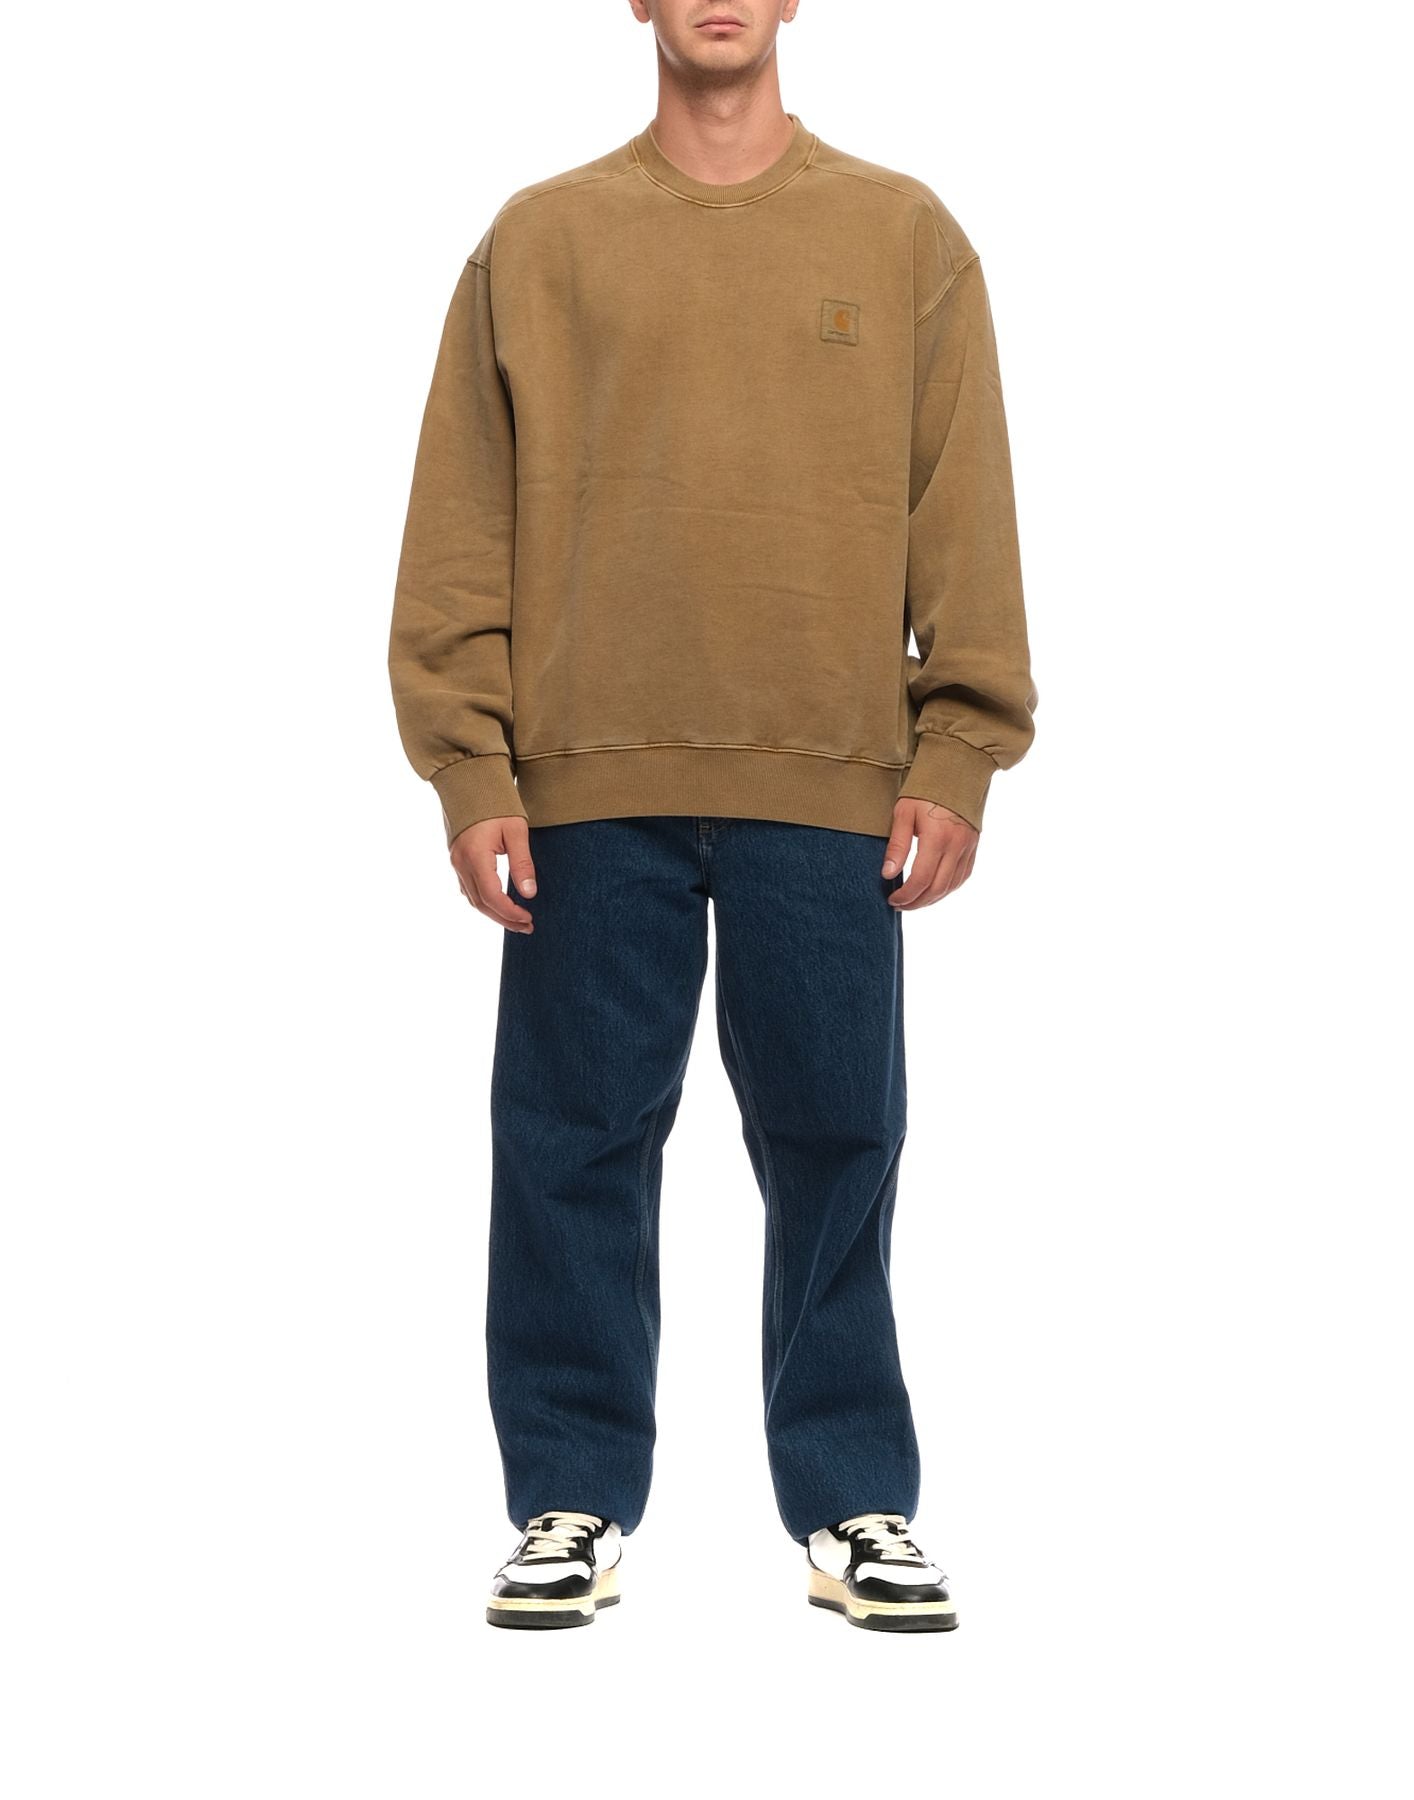 Sweatshirt for man I029522 BUFFALO CARHARTT WIP